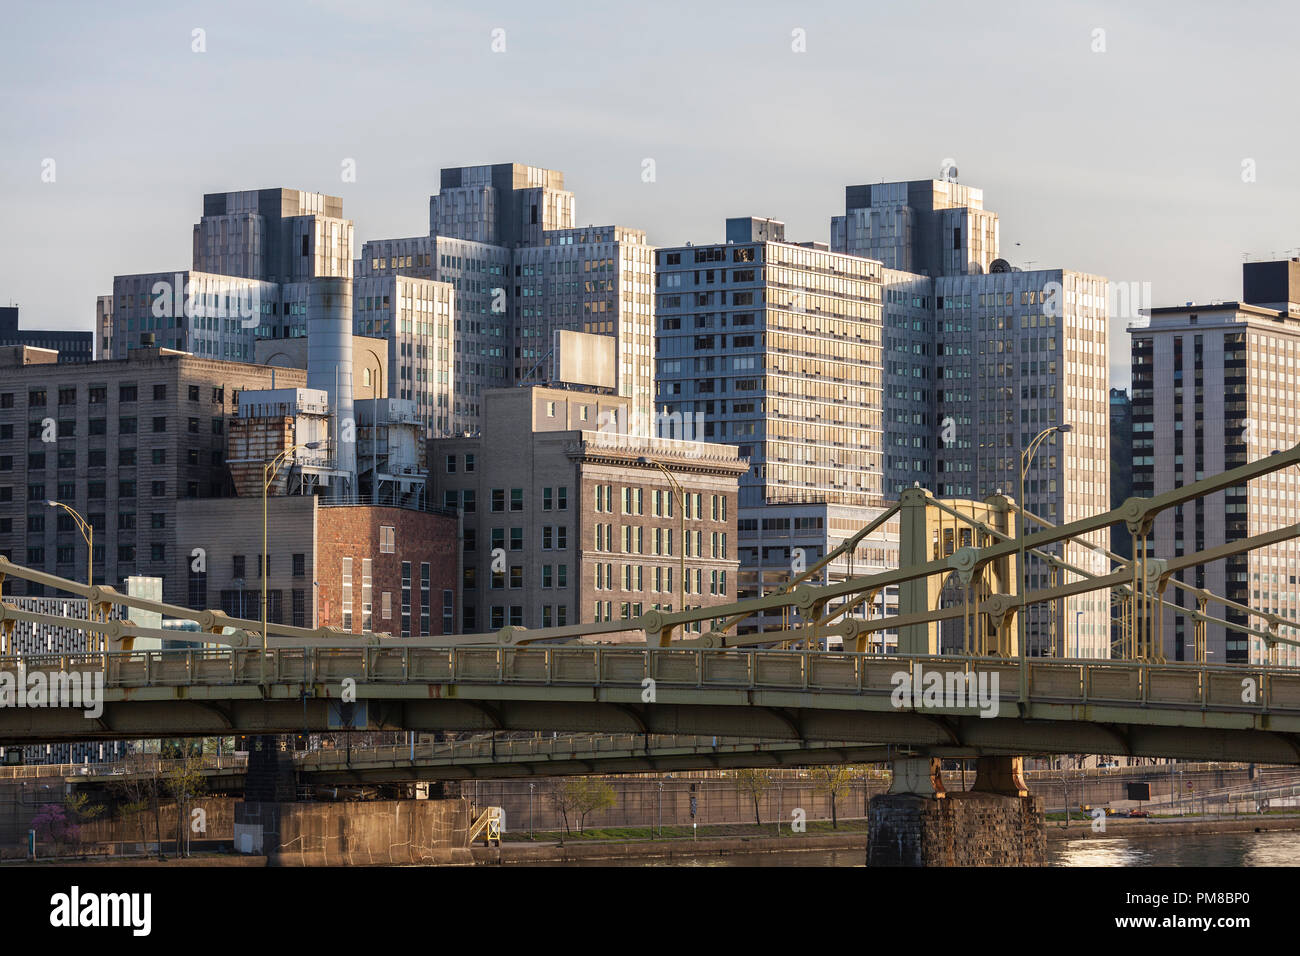 Les bâtiments du centre-ville urbain et les ponts de la rivière Allegheny dans la pittoresque ville de Pittsburgh, Pennsylvanie. Banque D'Images